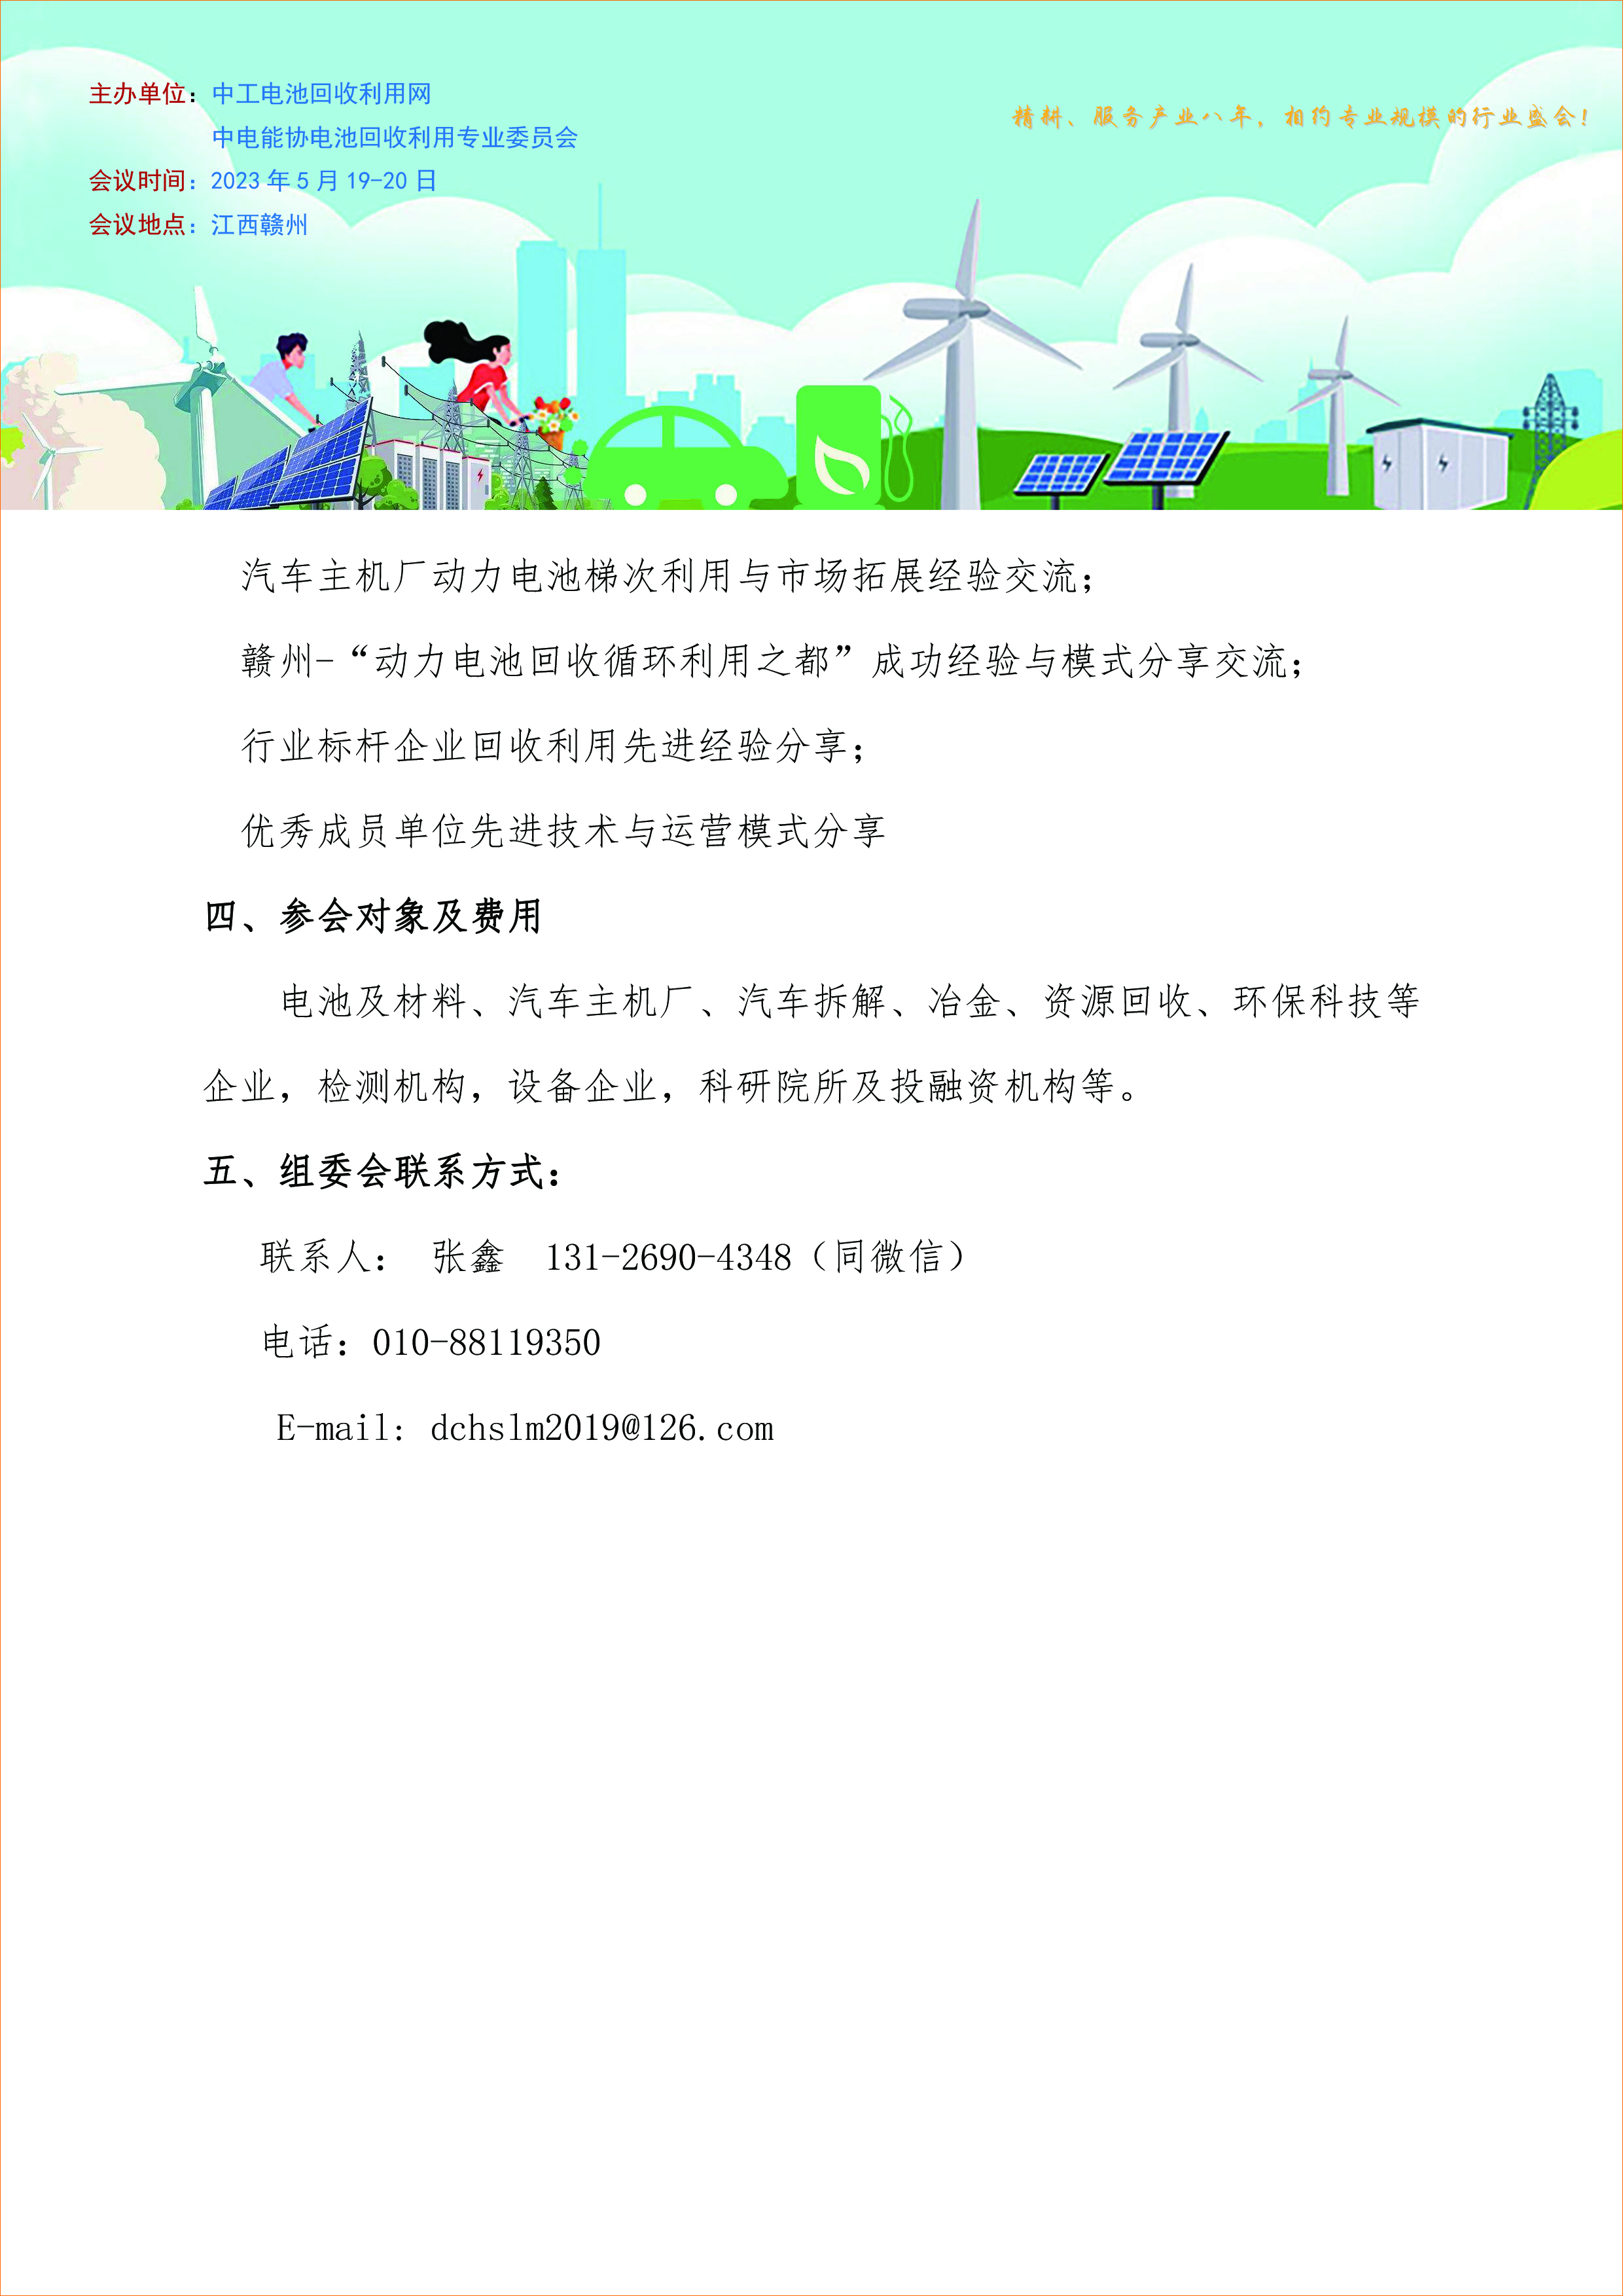 5月18日第八届动力电池回收利用高峰论坛将在赣州市举办(图3)